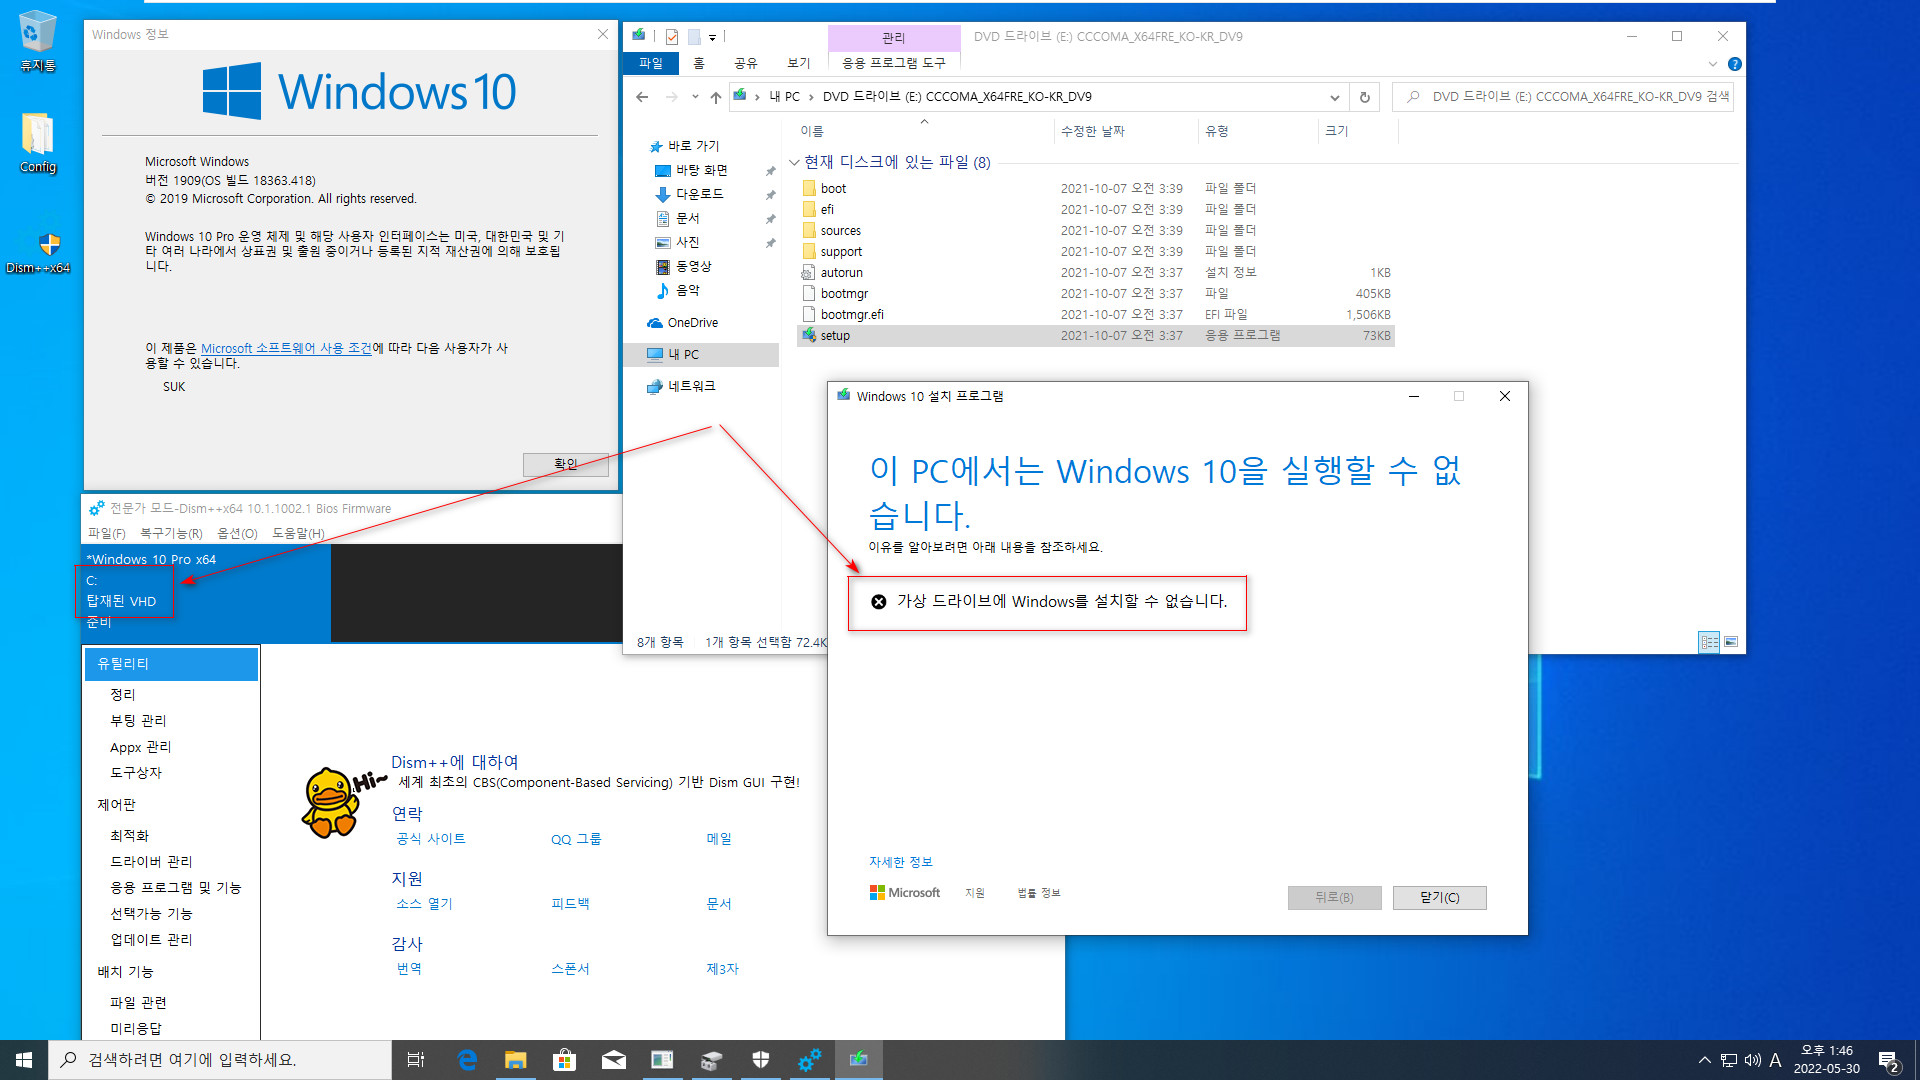 VHD에서는 윈도우 버전 업데이트가 되지 않습니다 - 참고로 윈도우 10 버전 2004부터는 윈도우 + 누적 업데이트까지 같기 때문에 VHD에서도 버전 업데이트가 됩니다 2022-05-30_134651.jpg